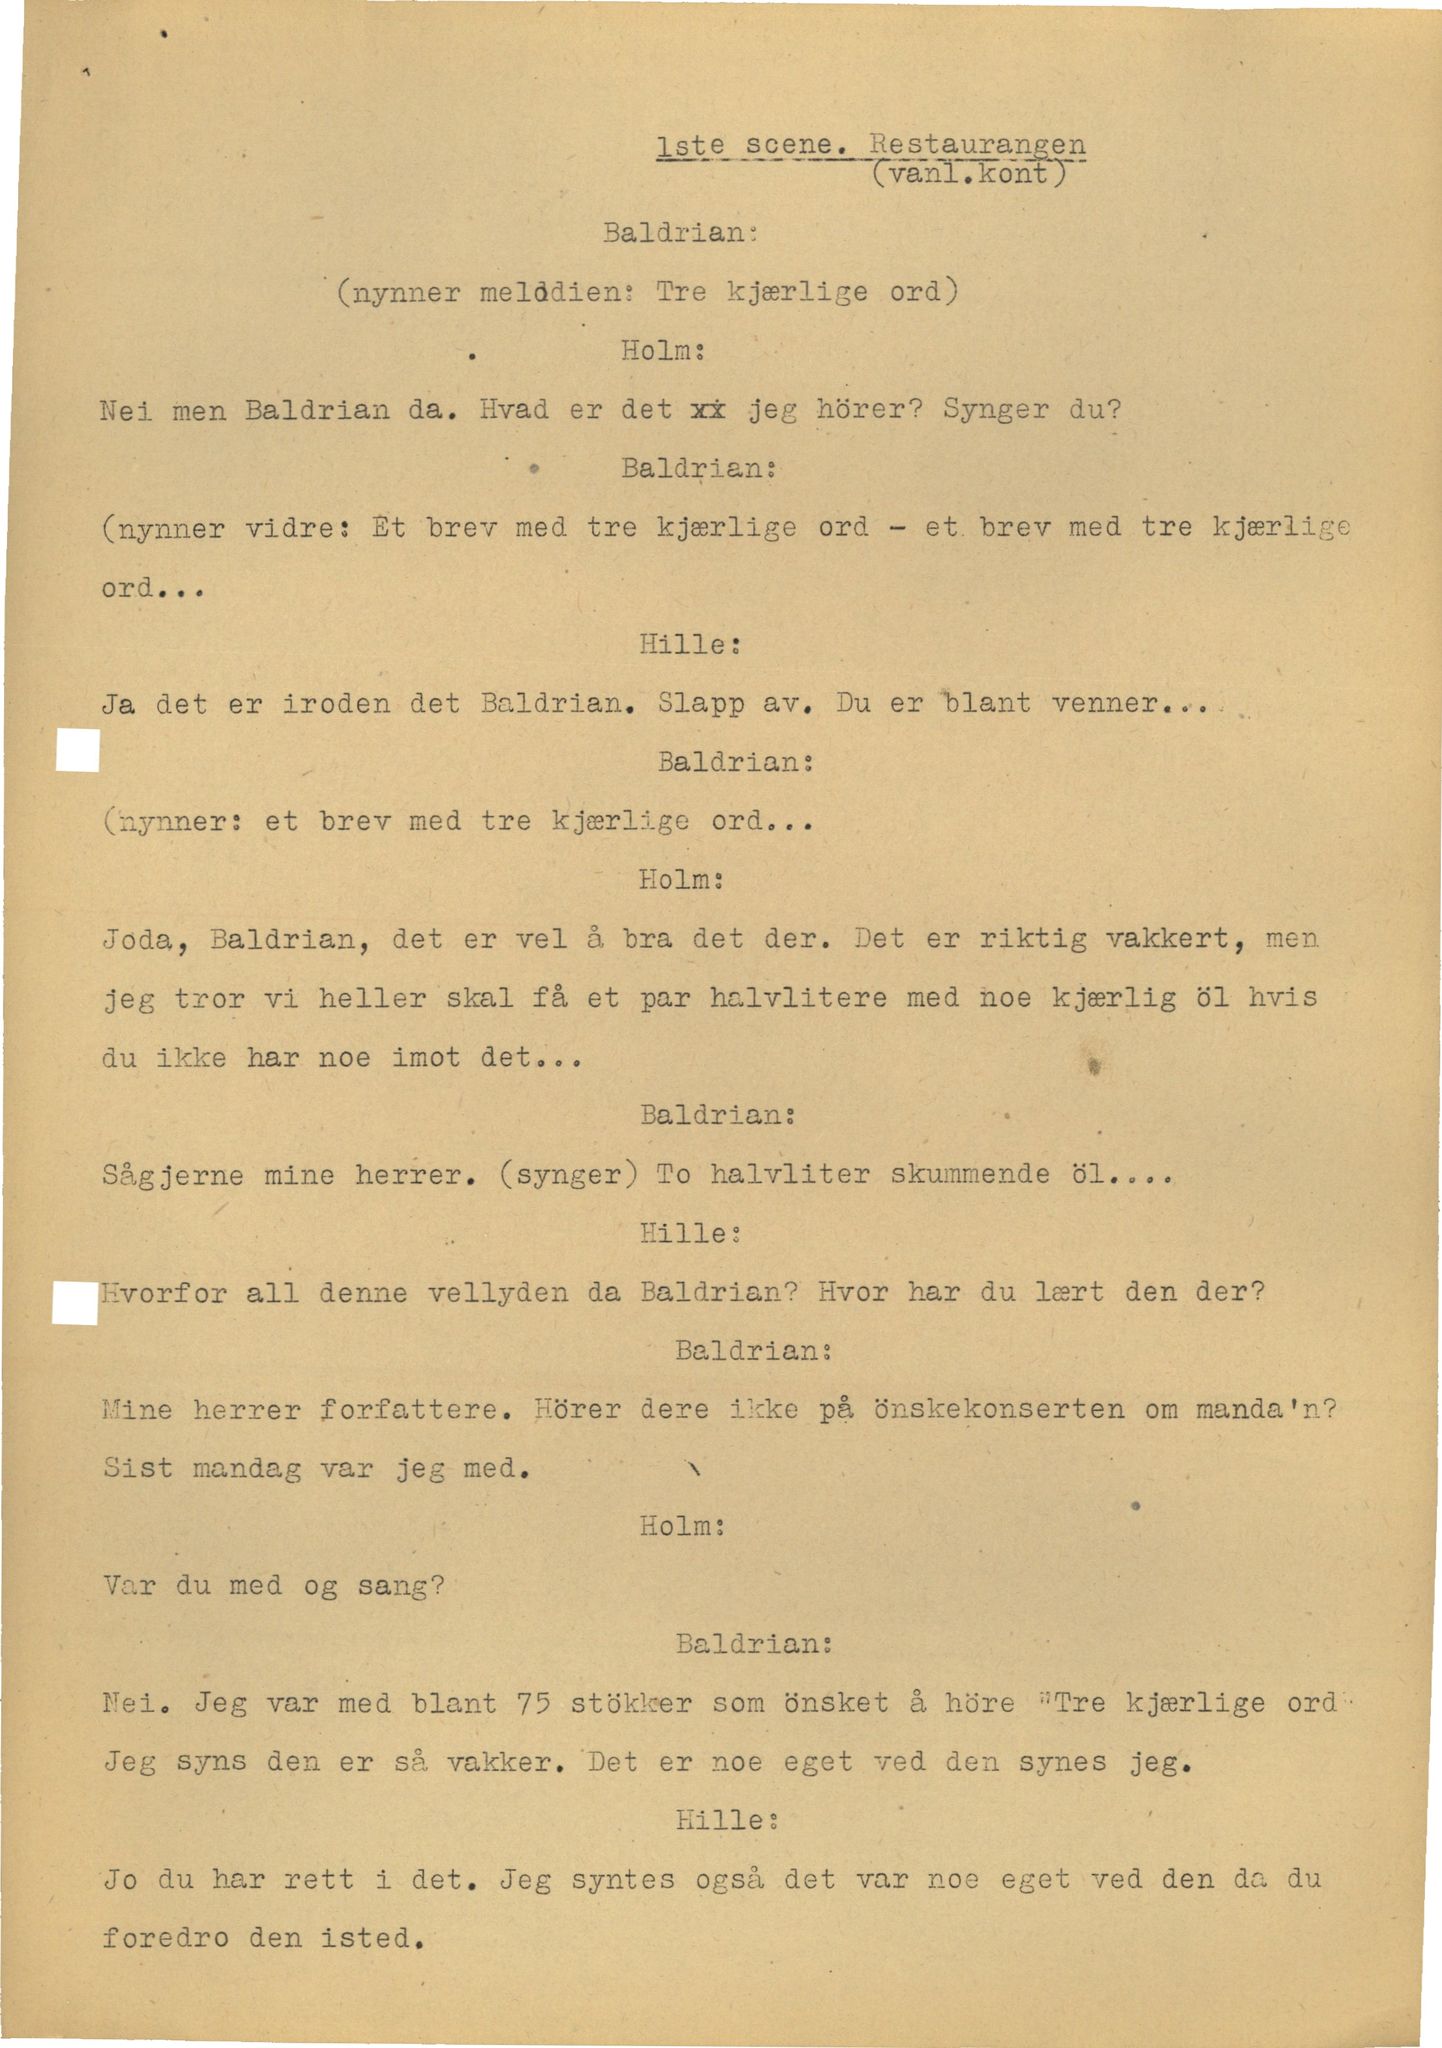 Otto Nielsen, TRKO/PA-1176/F/L0005/0029: Revytekster og viser / Forfatterfirmaet Holm og Hille nr. 3 Tre kjærlige ord